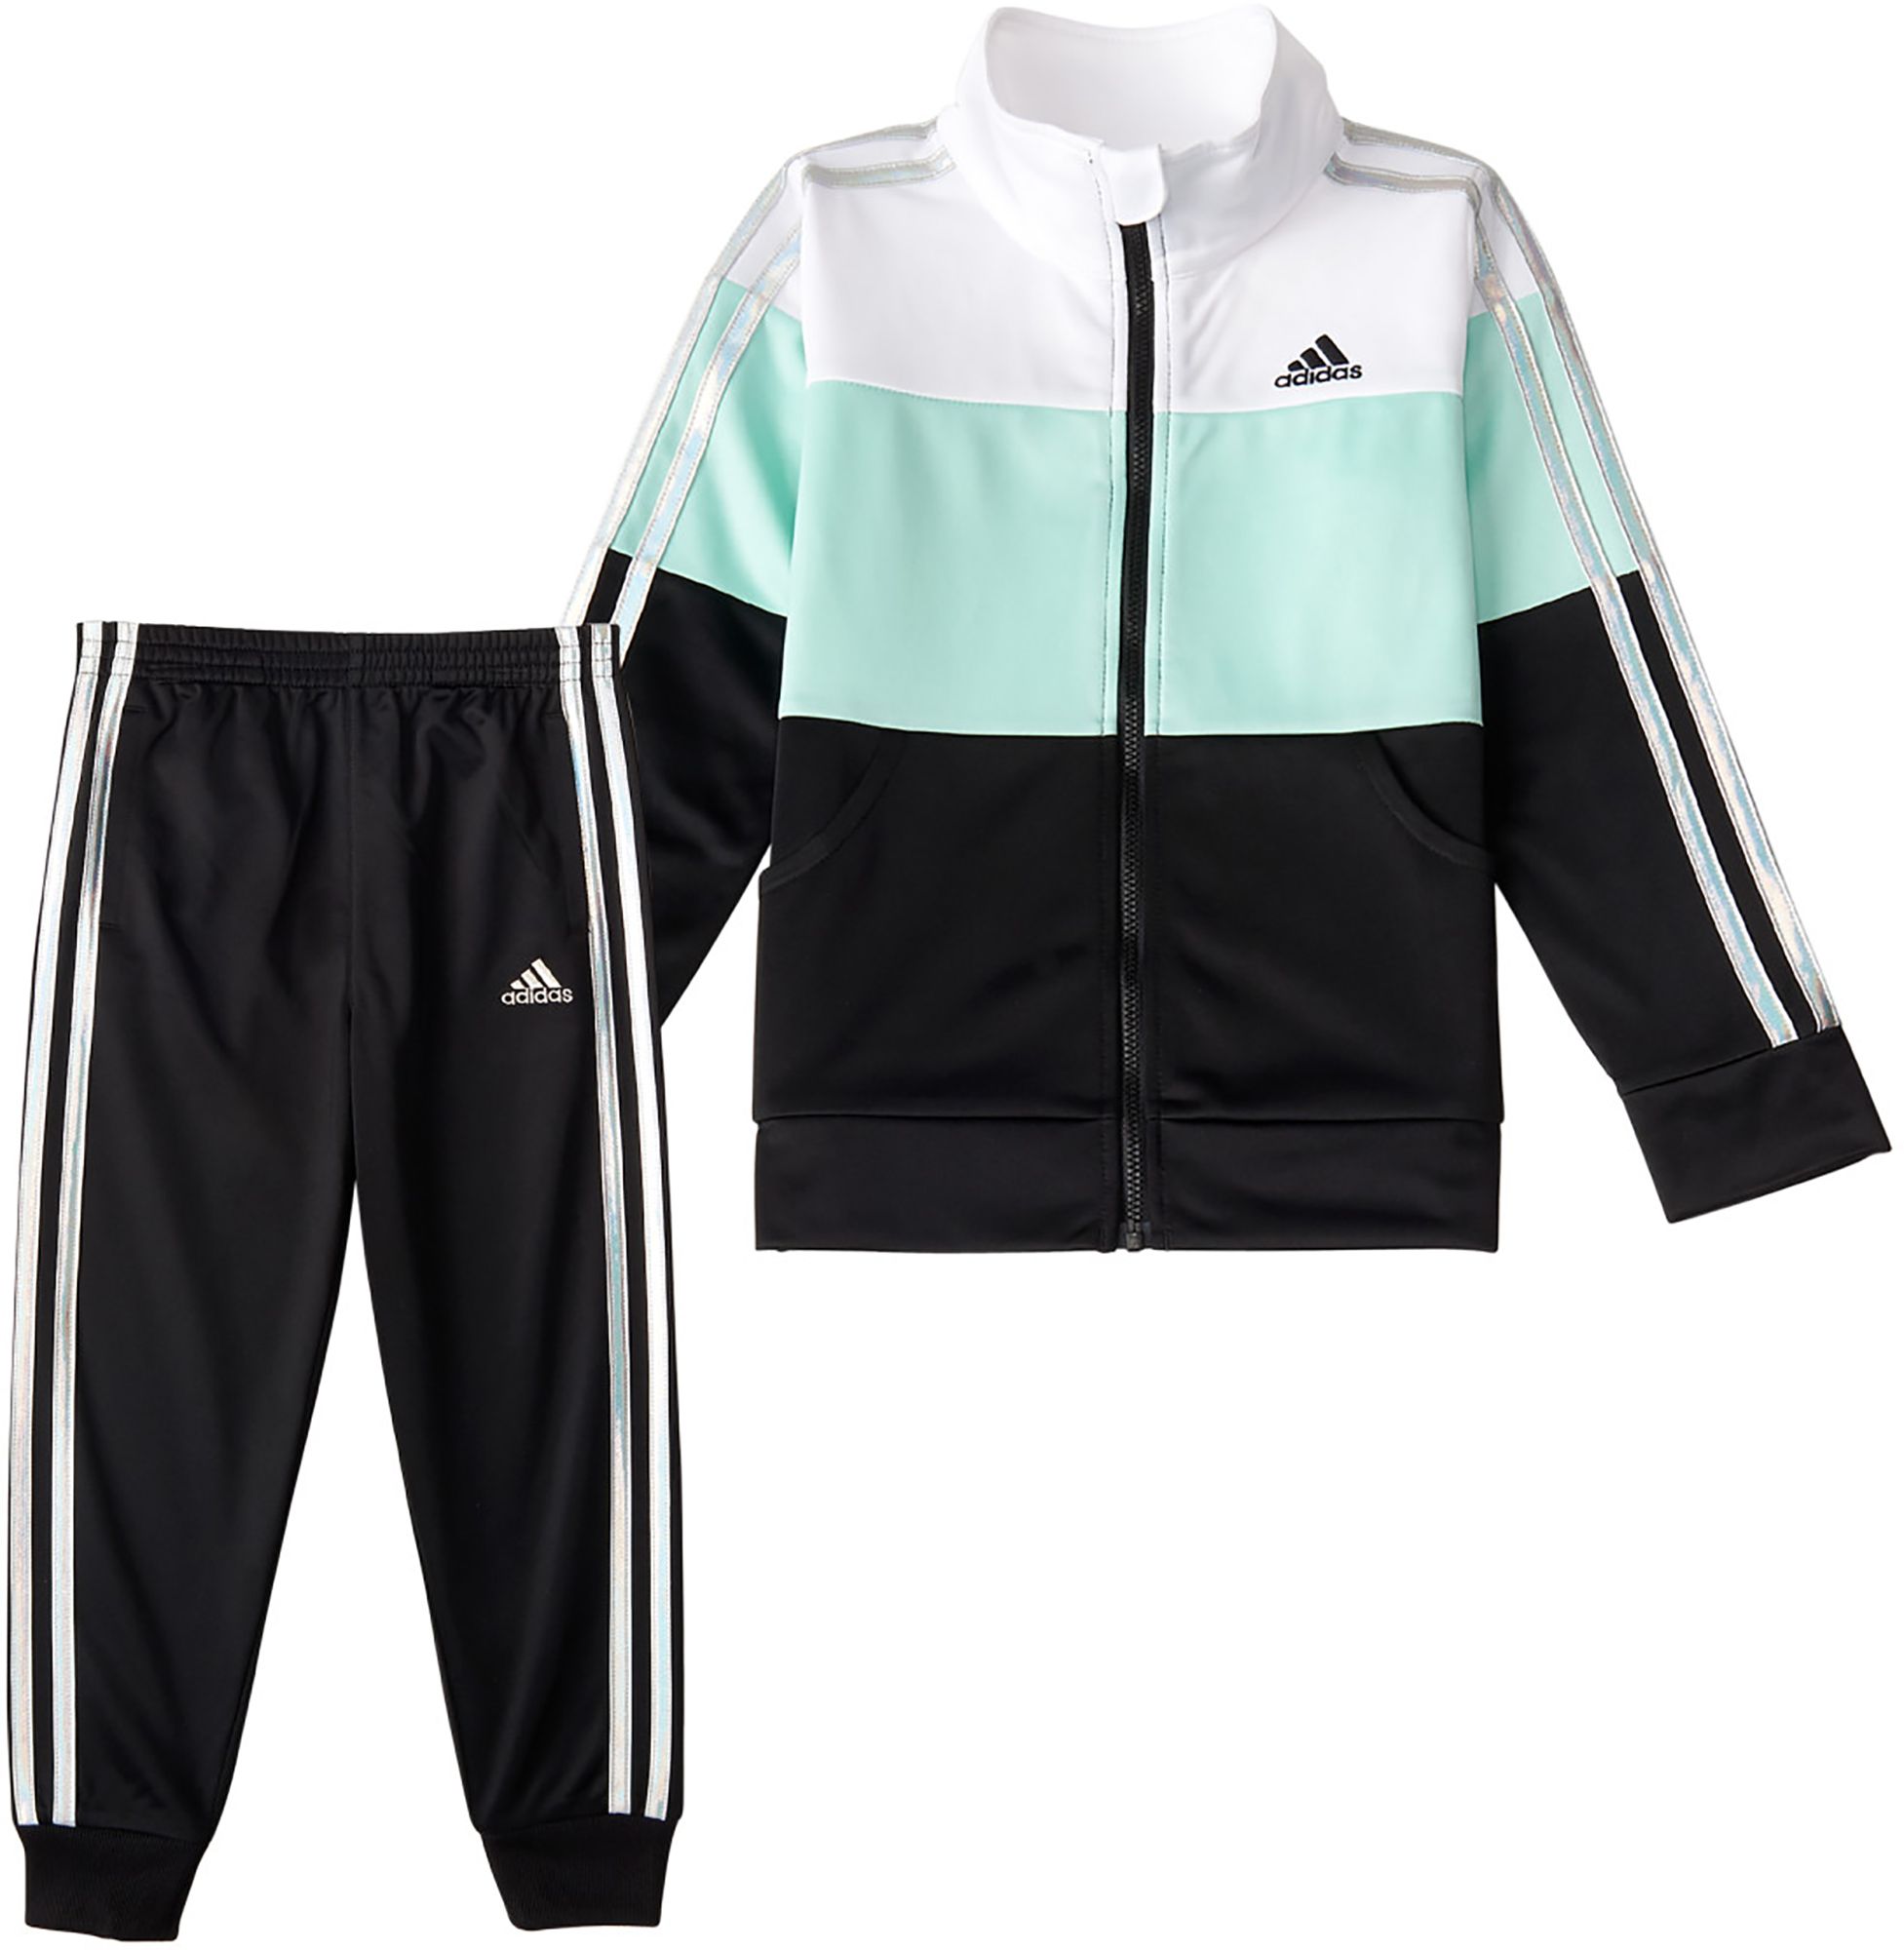 adidas jacket and pants set